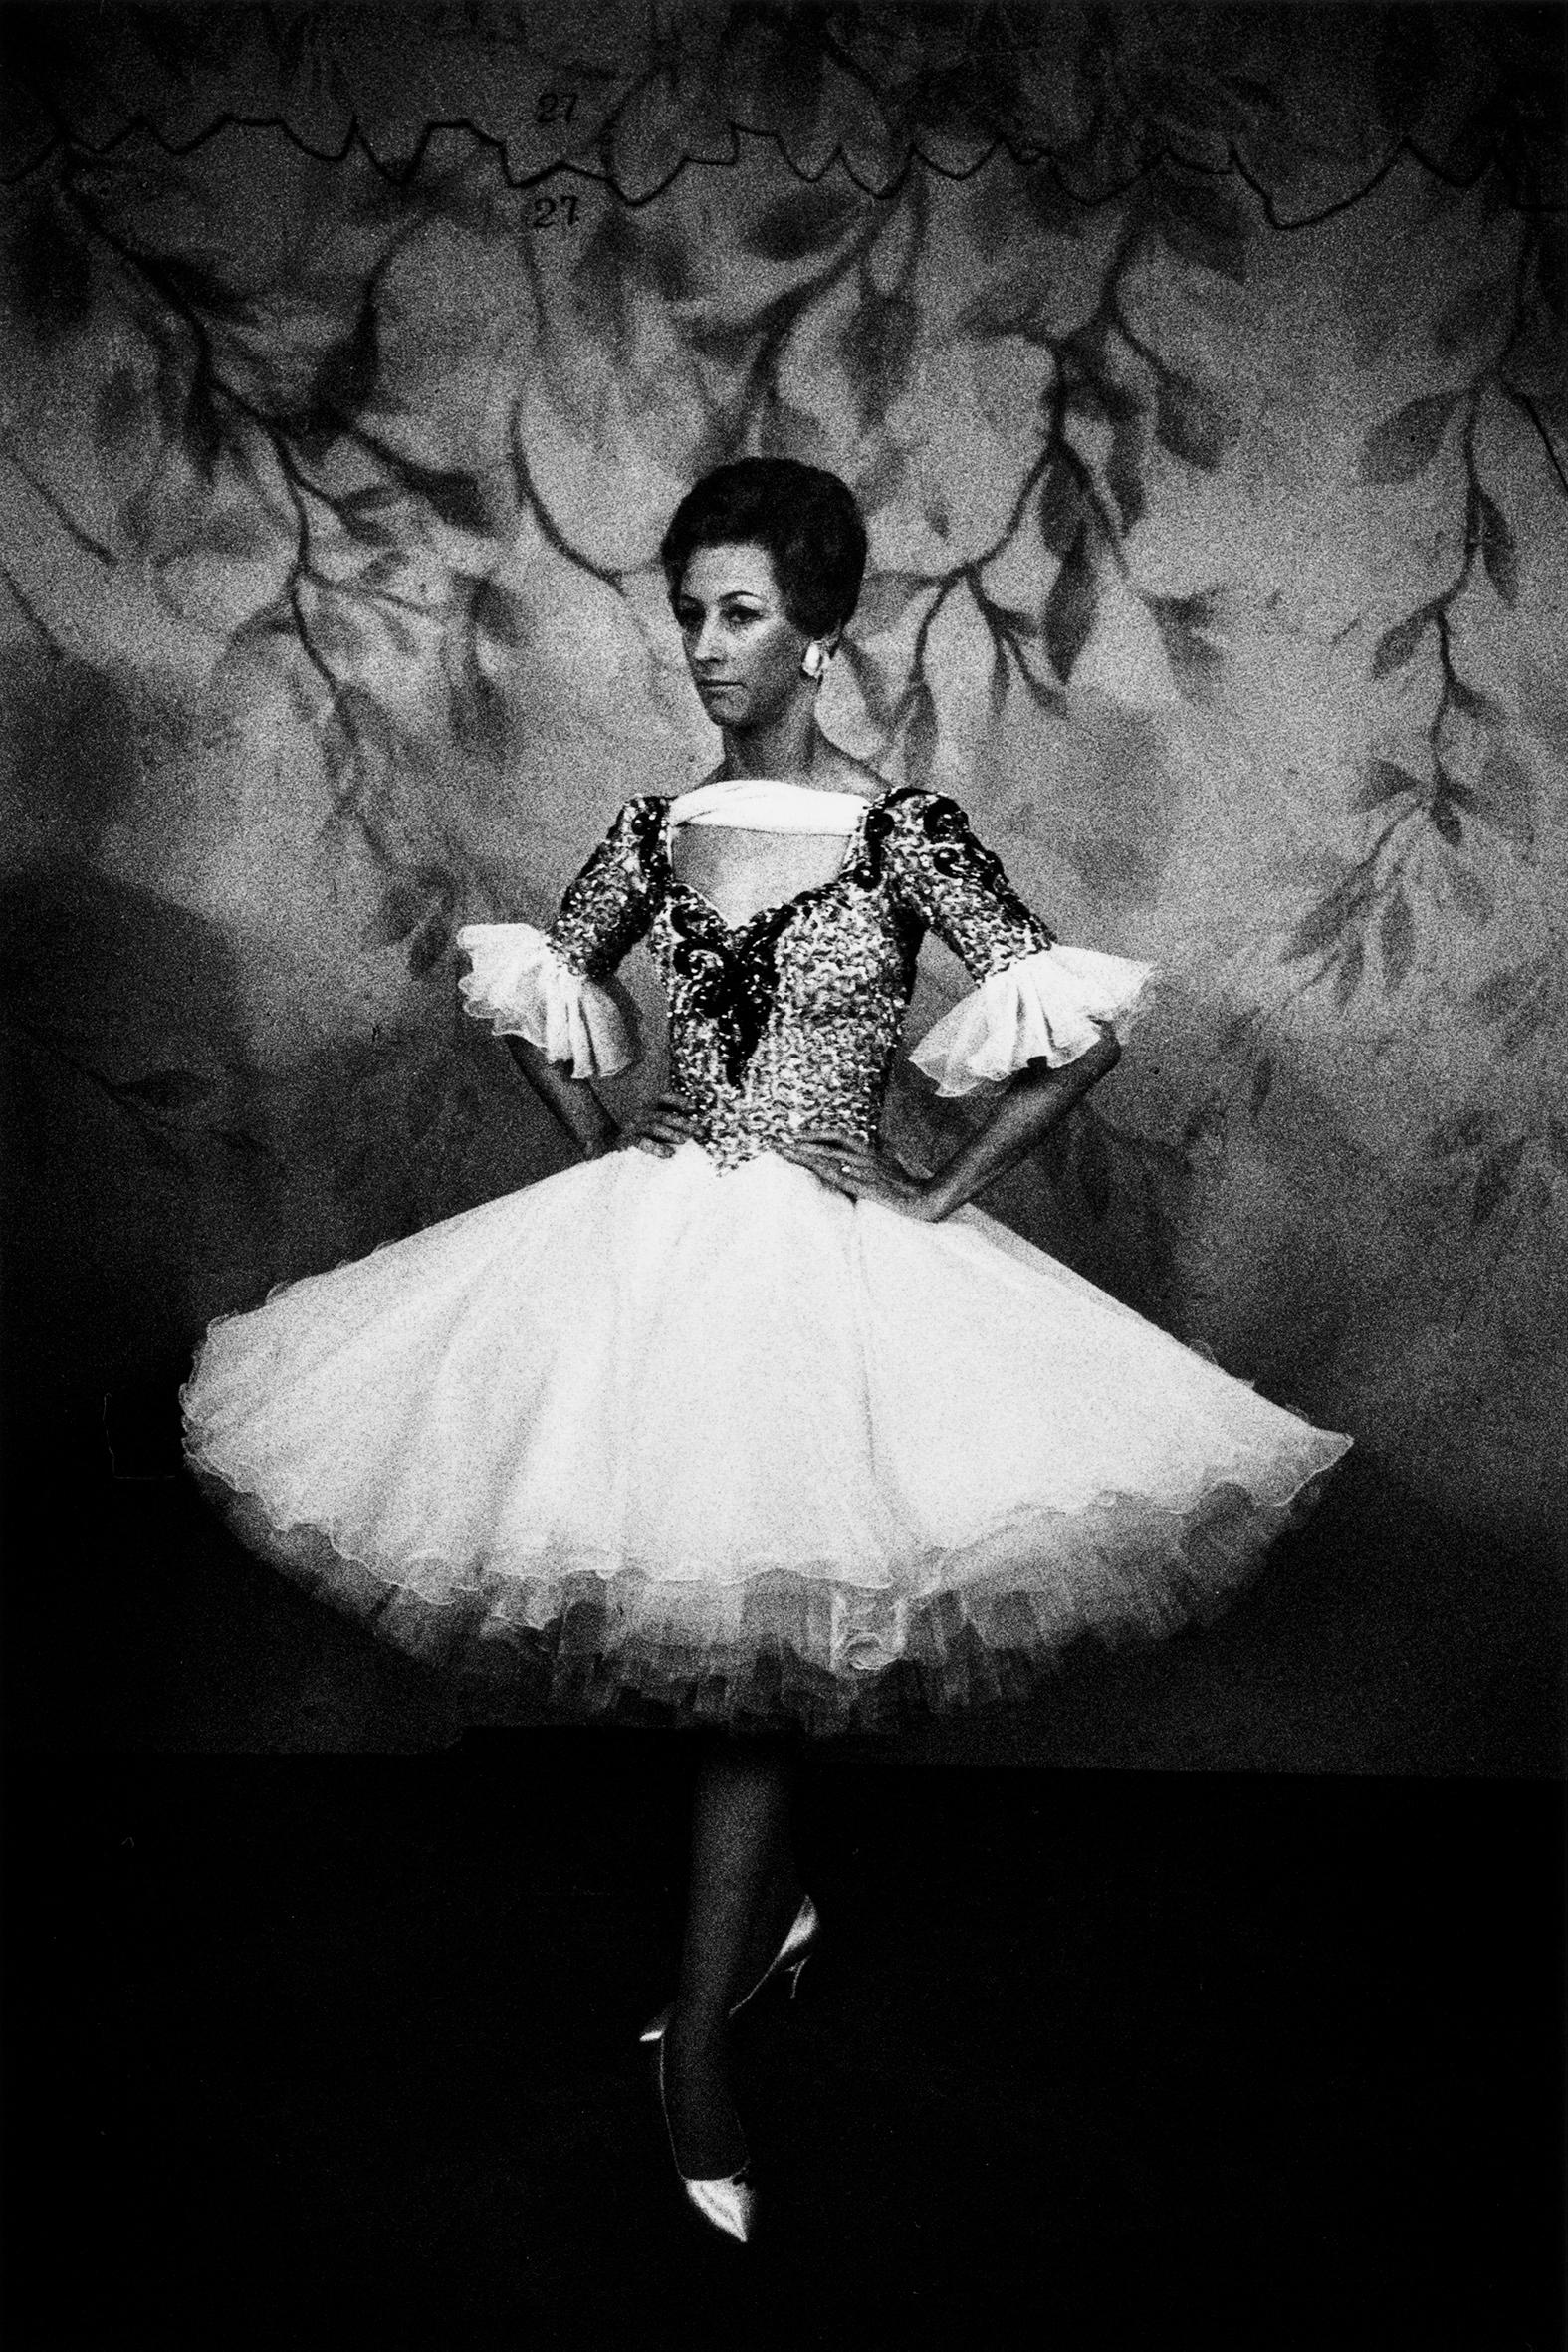 Schwarz-Weiß-Porträt einer Ballroom-Tänzerin aus den 1970er Jahren mit Schwing-Spitzenrock